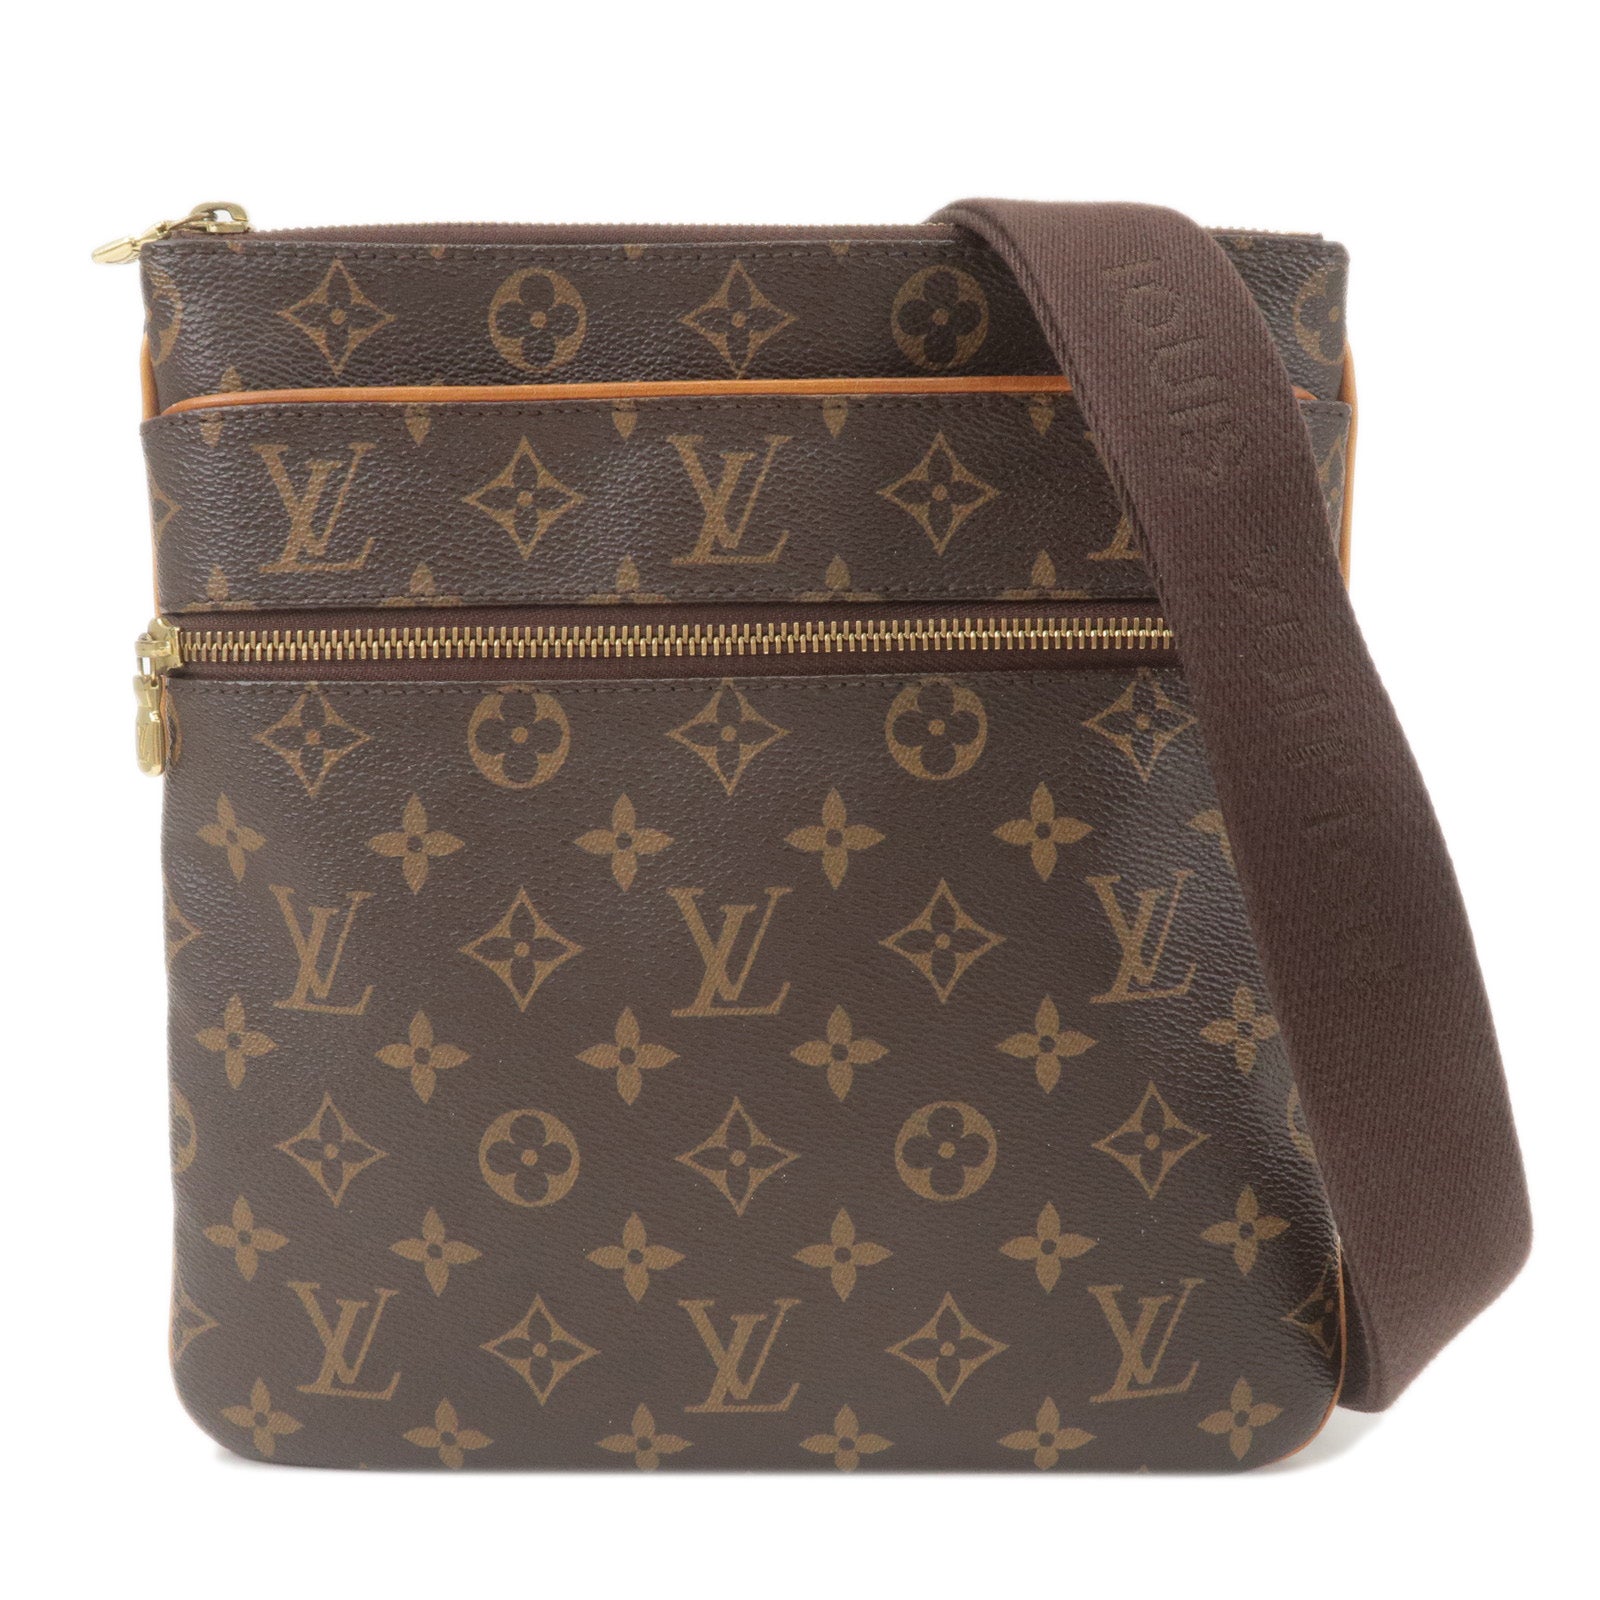 Luxury Bag Shop  Louis vuitton monogram, Louis vuitton, Luxury bags